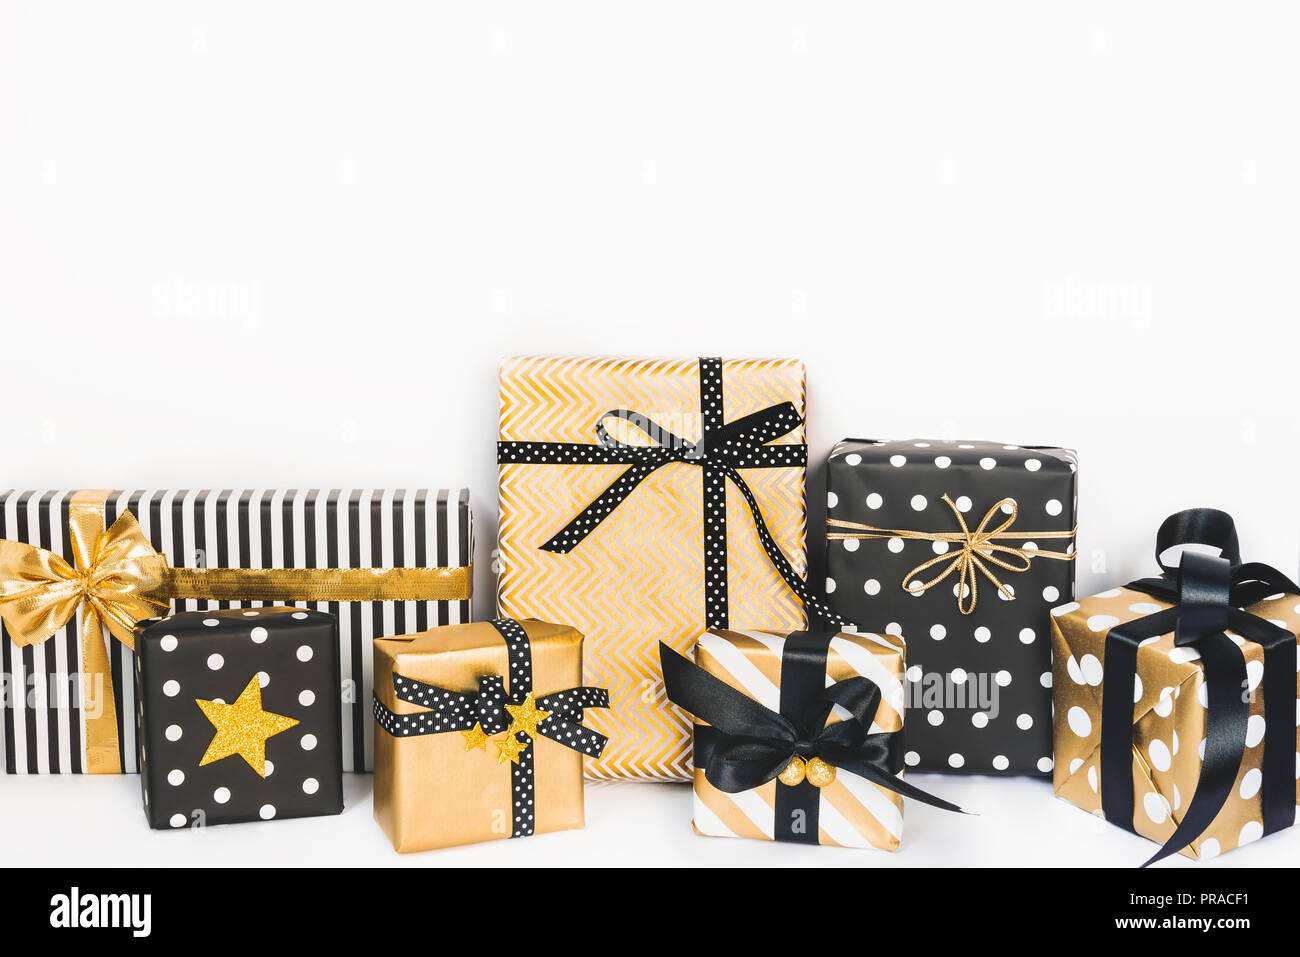 Vista frontale delle scatole regalo in vari nero, bianco e disegni dorati. Copia dello spazio. Un concetto di Natale, Capodanno, Festa di compleanno evento. Foto Stock